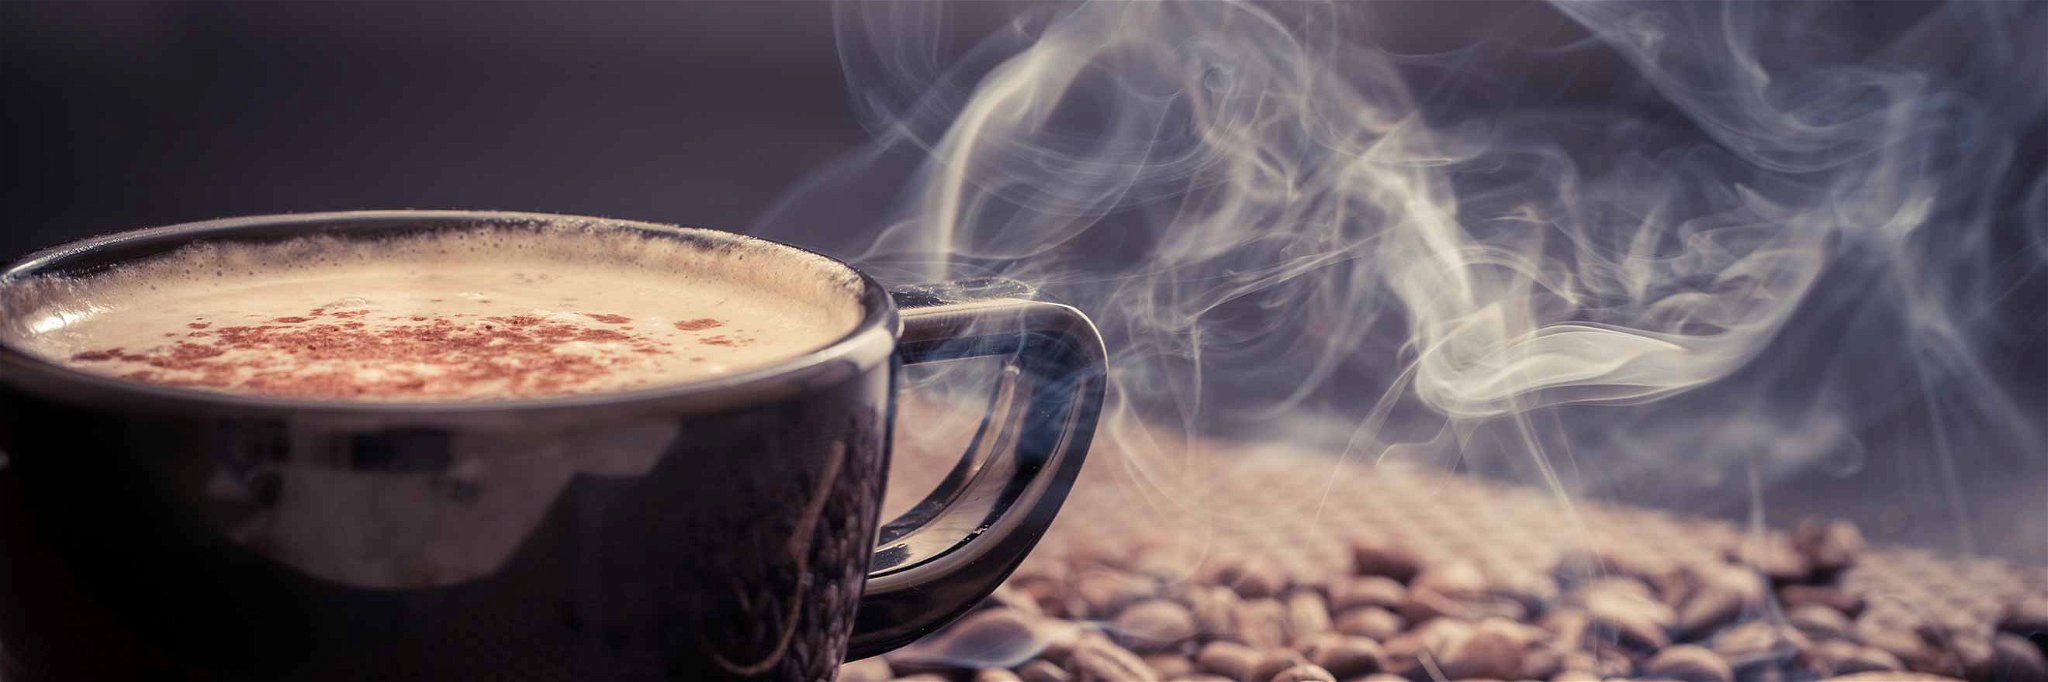 Der Energiekick am Morgen: Gibt es bald Zahnpasta mit Koffeingehalt und Kaffeegeschmack?